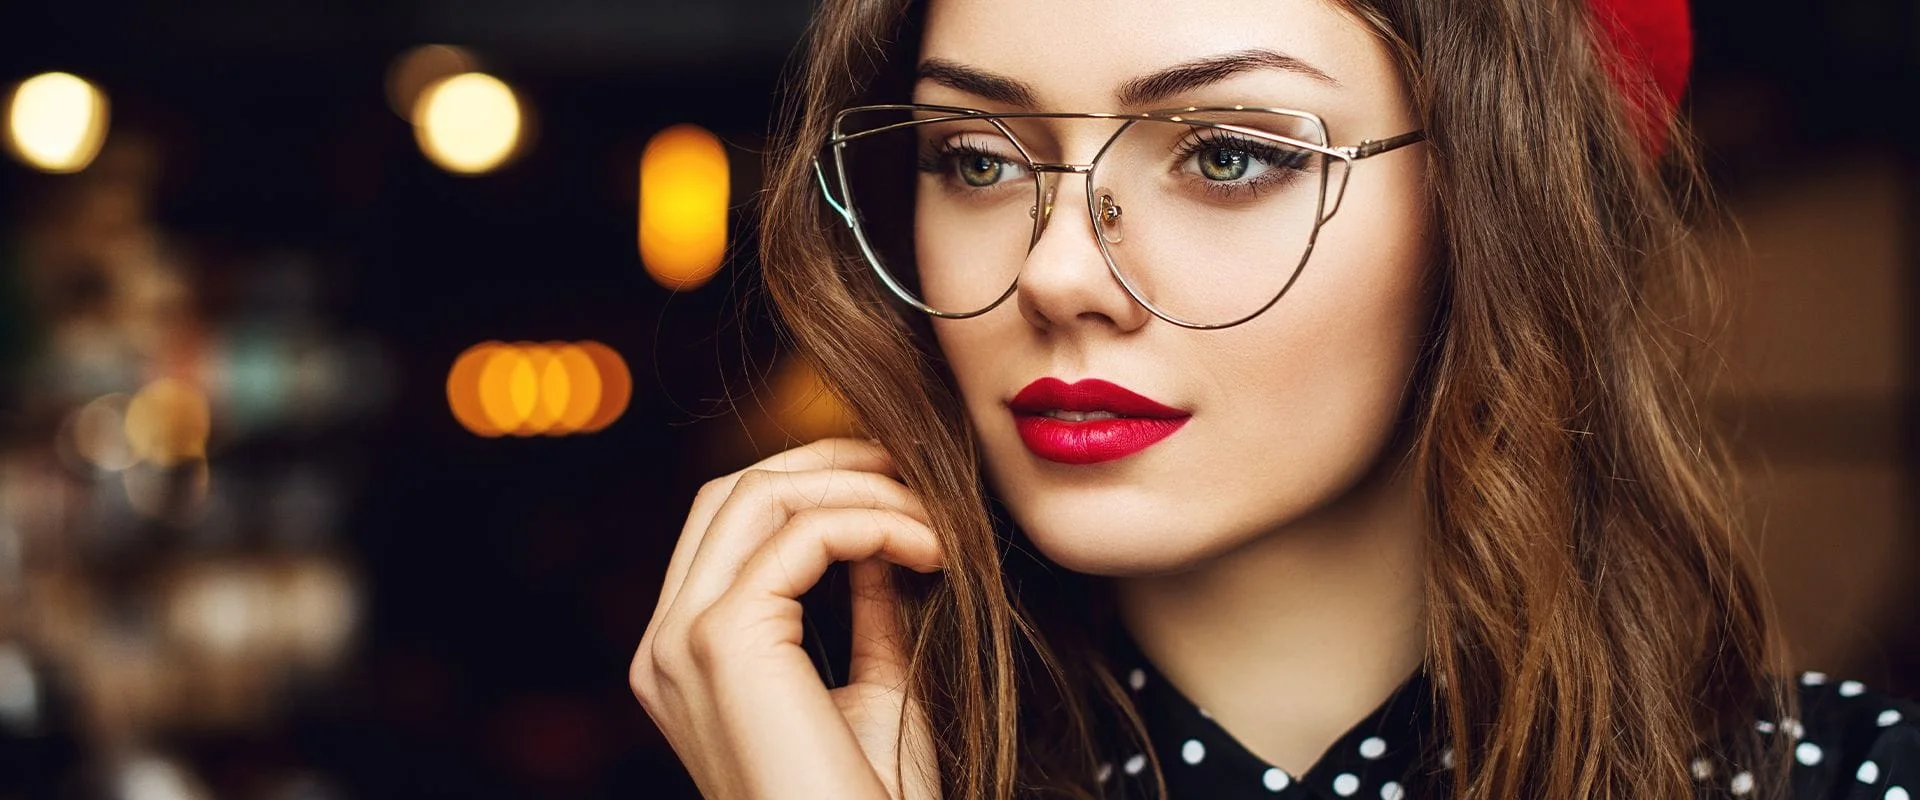 girl-wearing-glasses